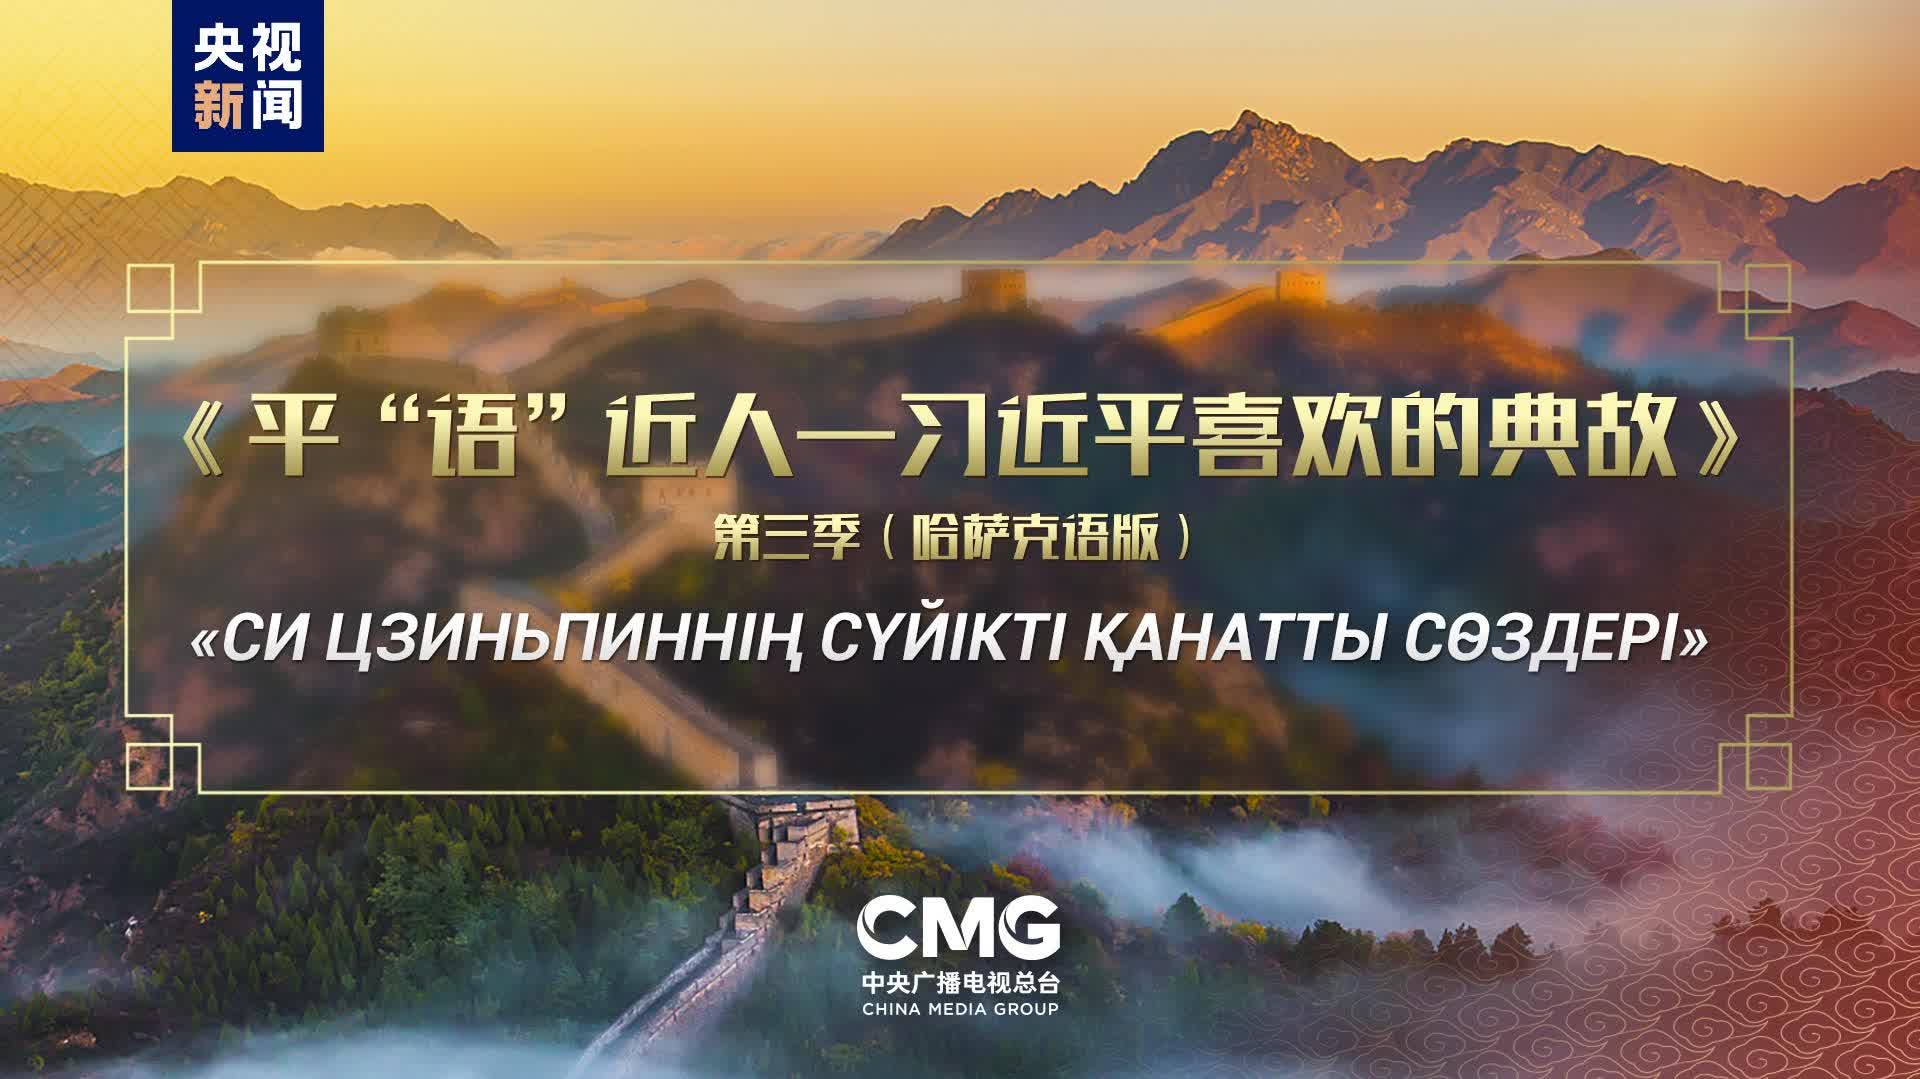 《平「語」近人——習近平喜歡的典故》第三季（哈薩克語版）將在哈薩克斯坦多家主流媒體播出